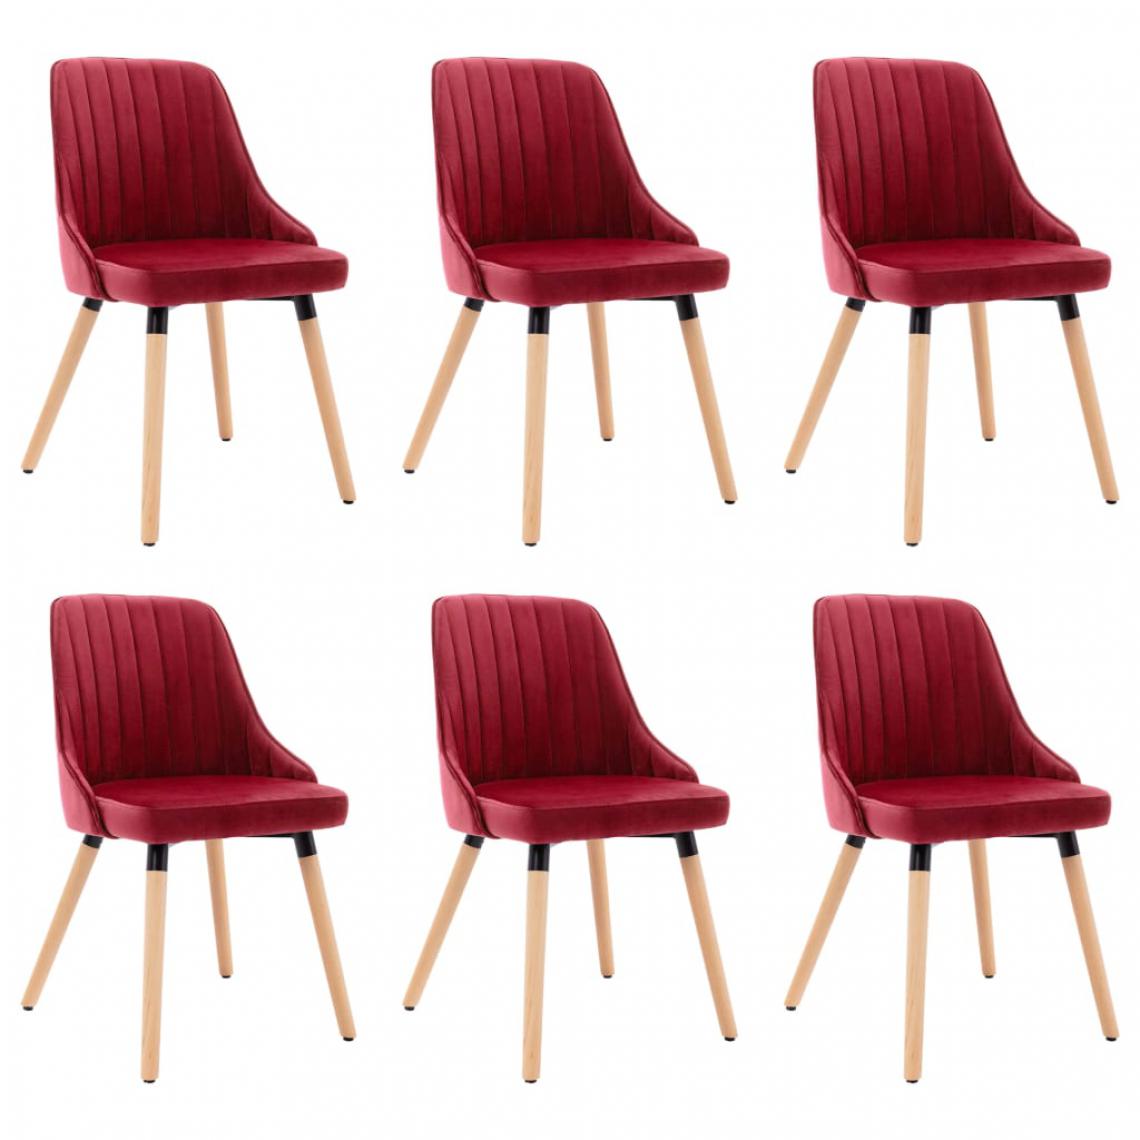 Icaverne - Joli Fauteuils et chaises famille Bucarest Chaises de salle à manger 6 pcs Rouge bordeaux Velours - Chaises